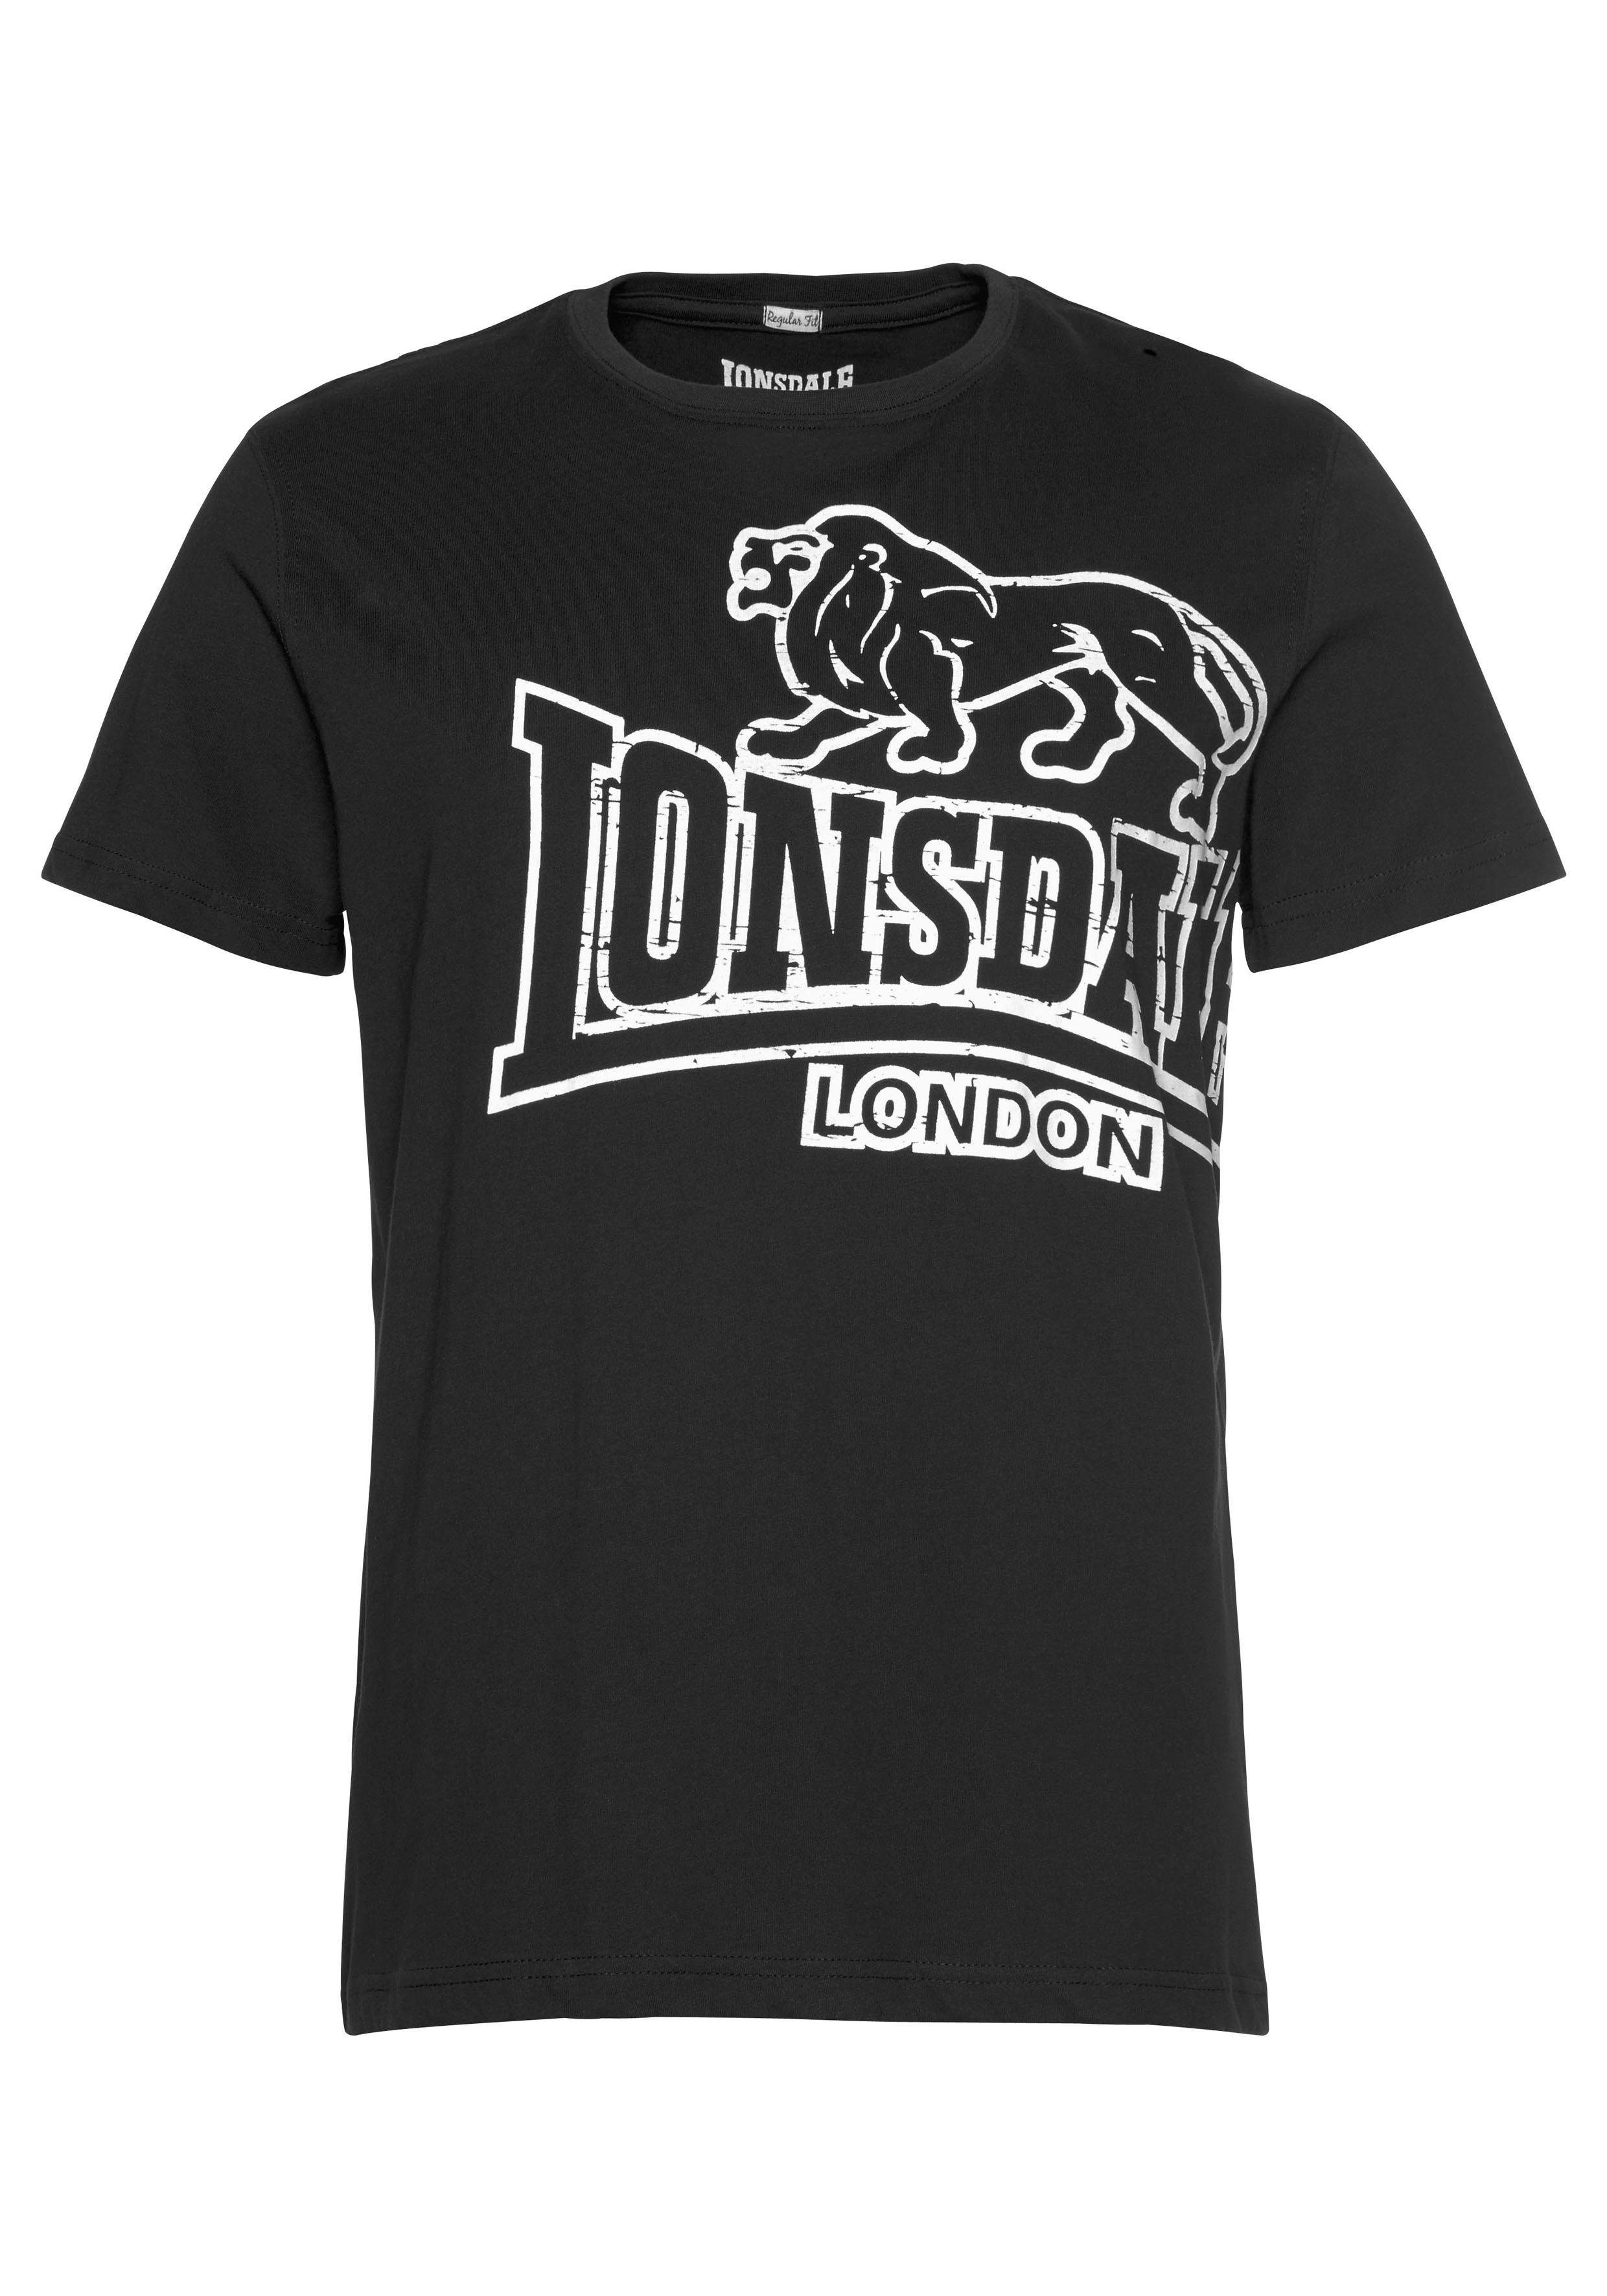 LANGSETT Black Lonsdale T-Shirt